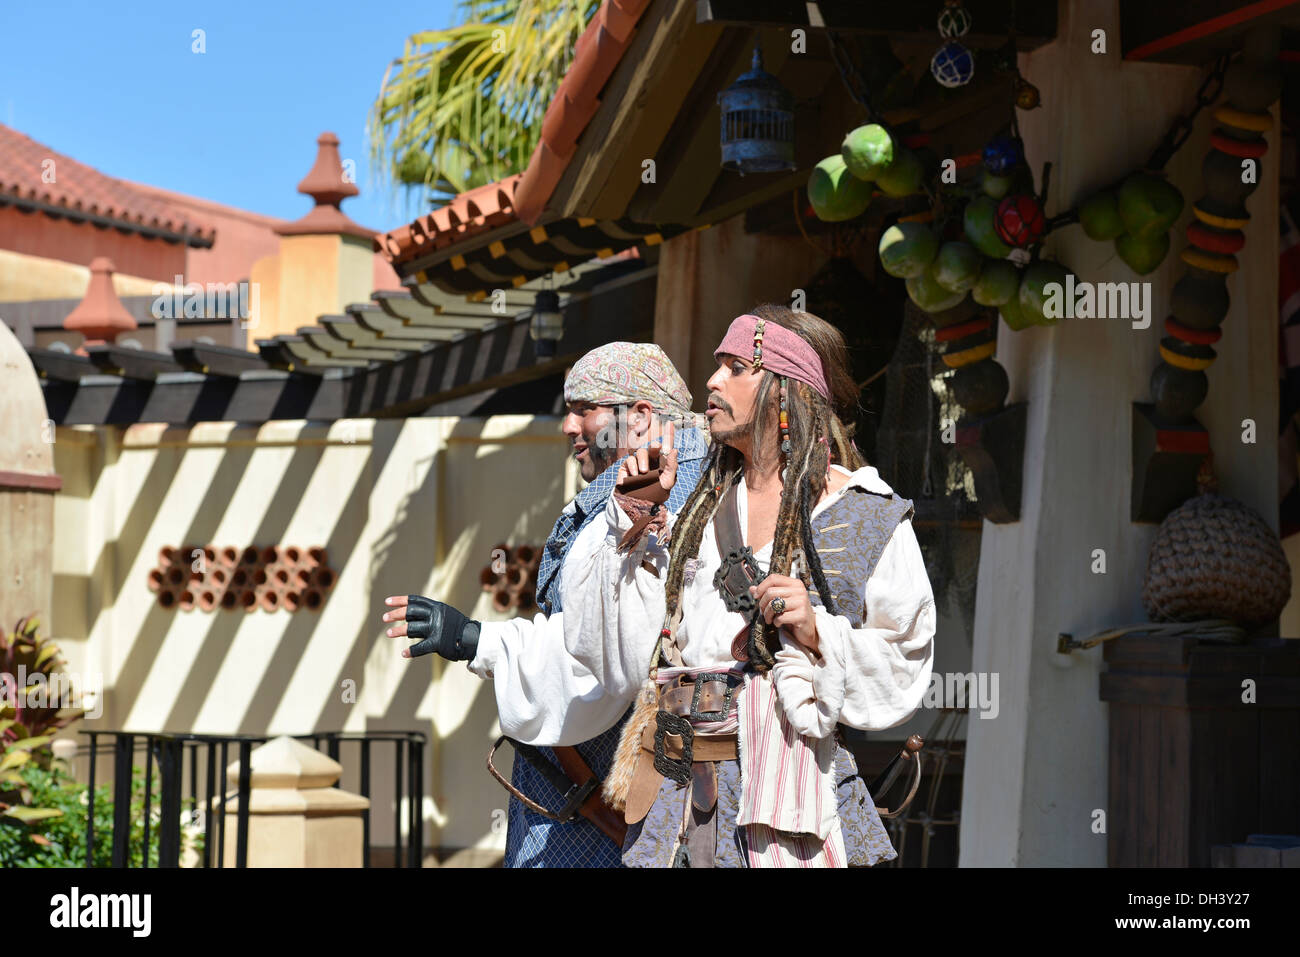 Captain Jack Sparrow Piraten Tutorial zeigen im Adventureland im Magic Kingdom, Disney World Resort, Florida Stockfoto